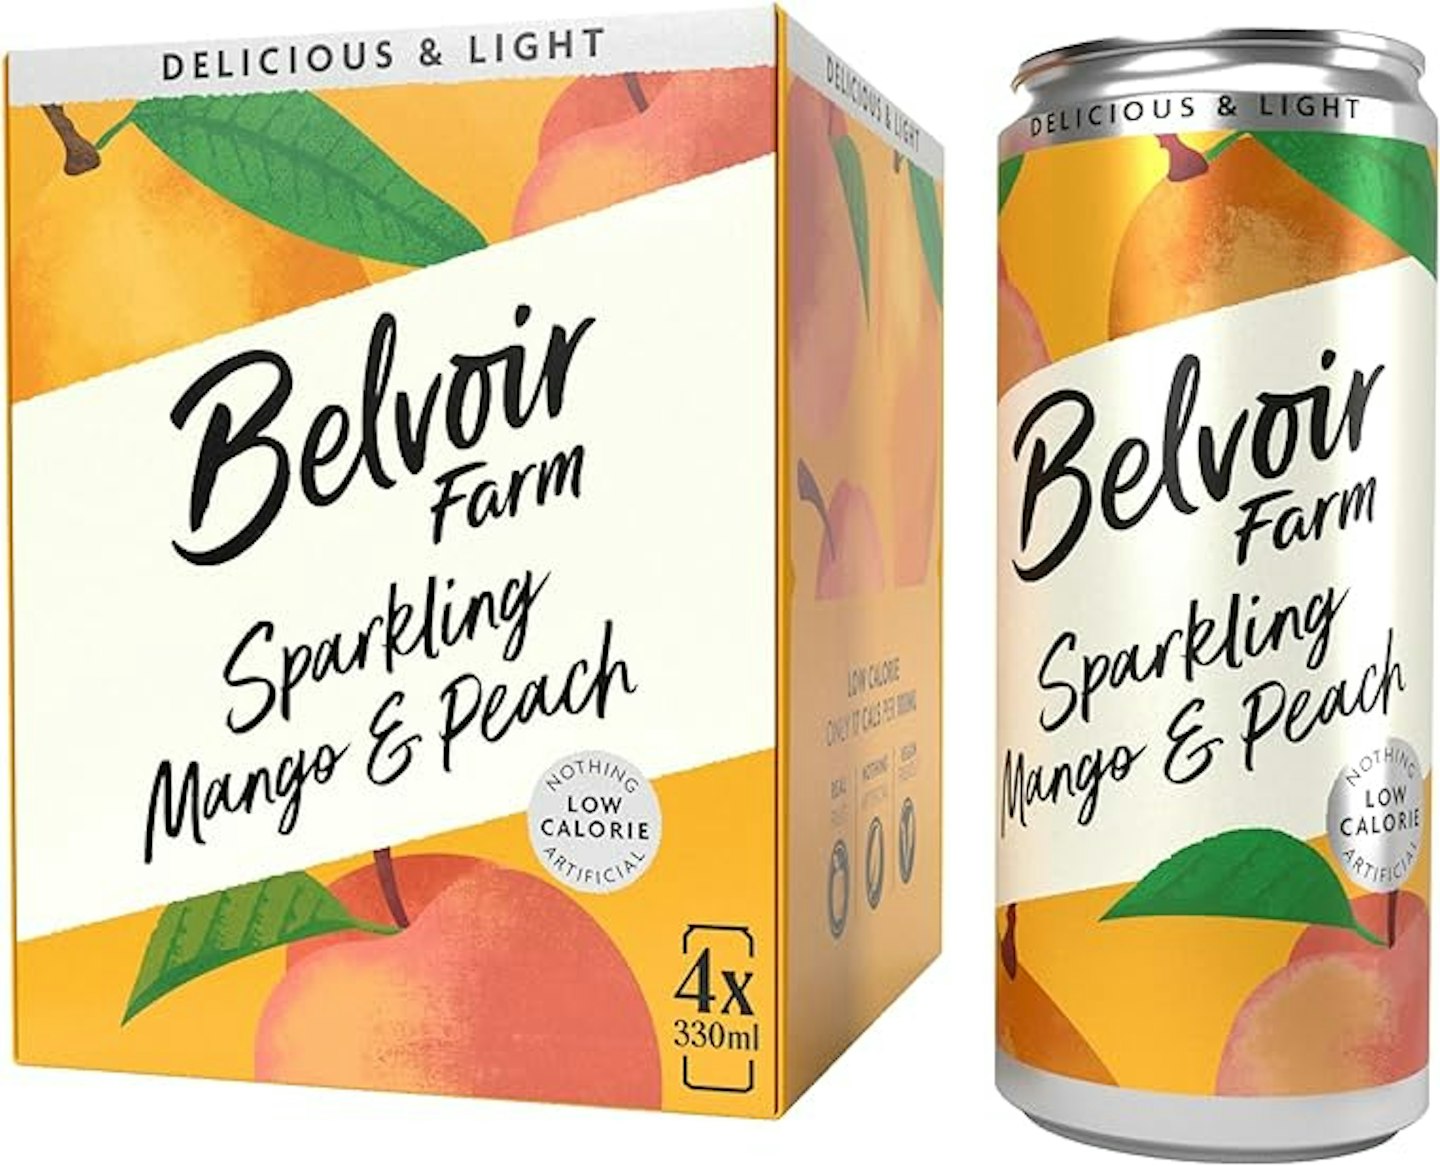 Belvoir Farm - best non-alcoholic drinks